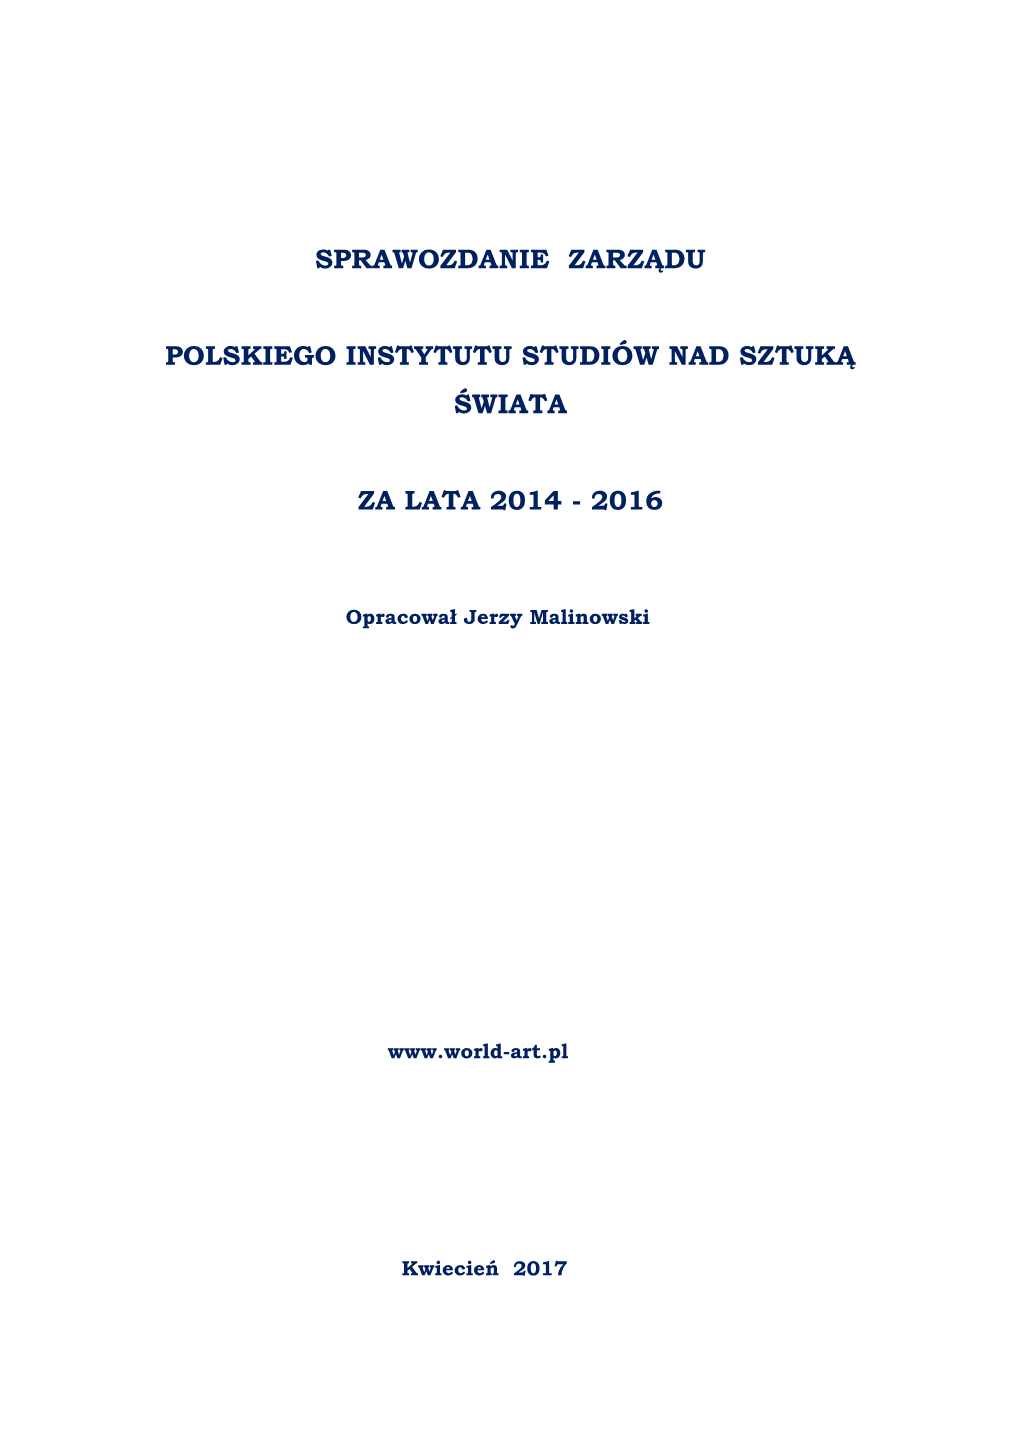 Sprawozdanie Zarządu Polskiego Instytutu